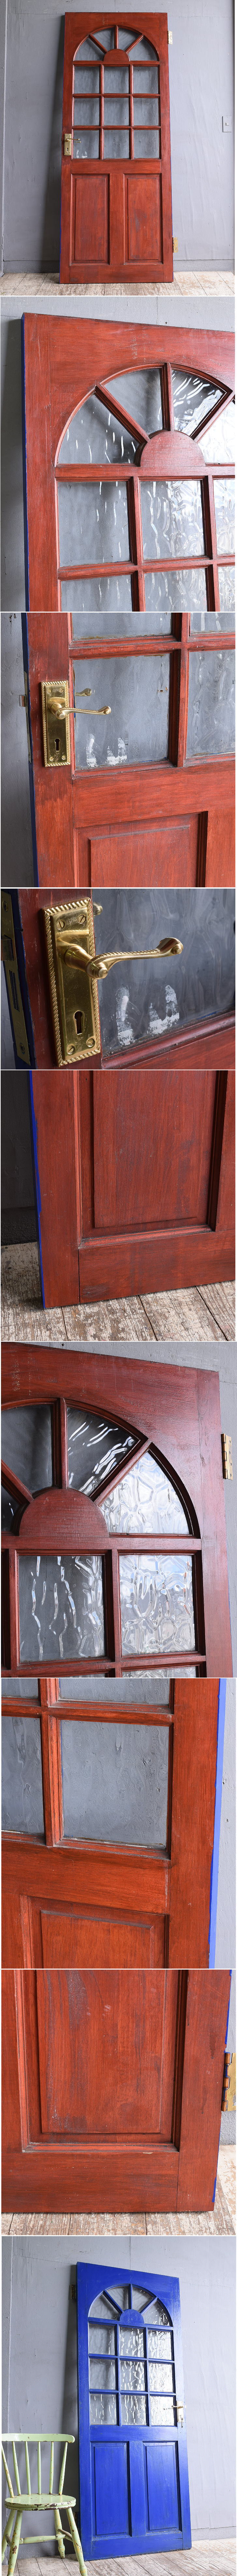 イギリス アンティーク 木製ドア 扉 建具 11845